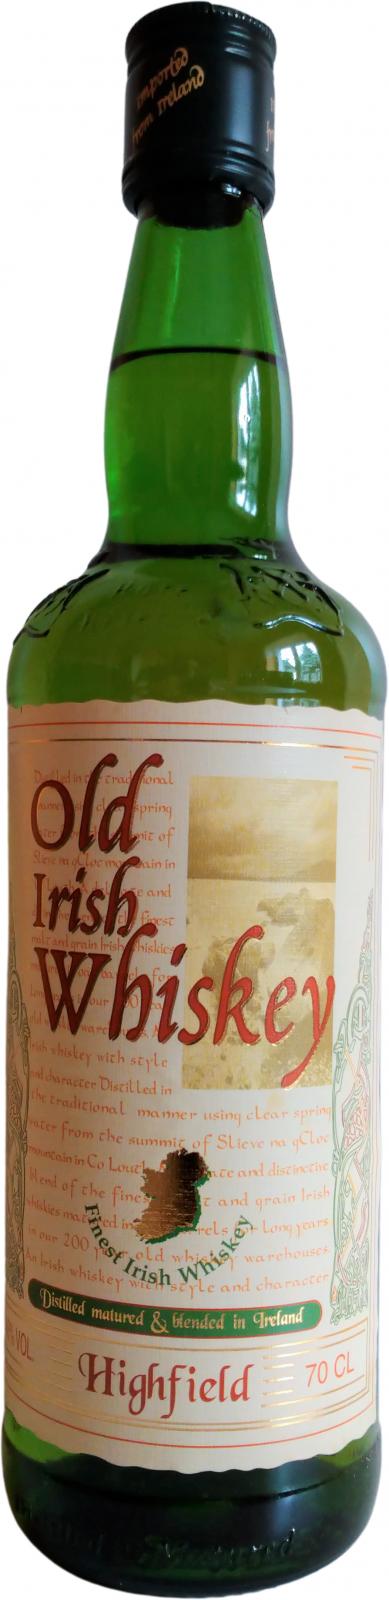 Highfield Old Irish Whisky Auchan Supermarche 40% 700ml